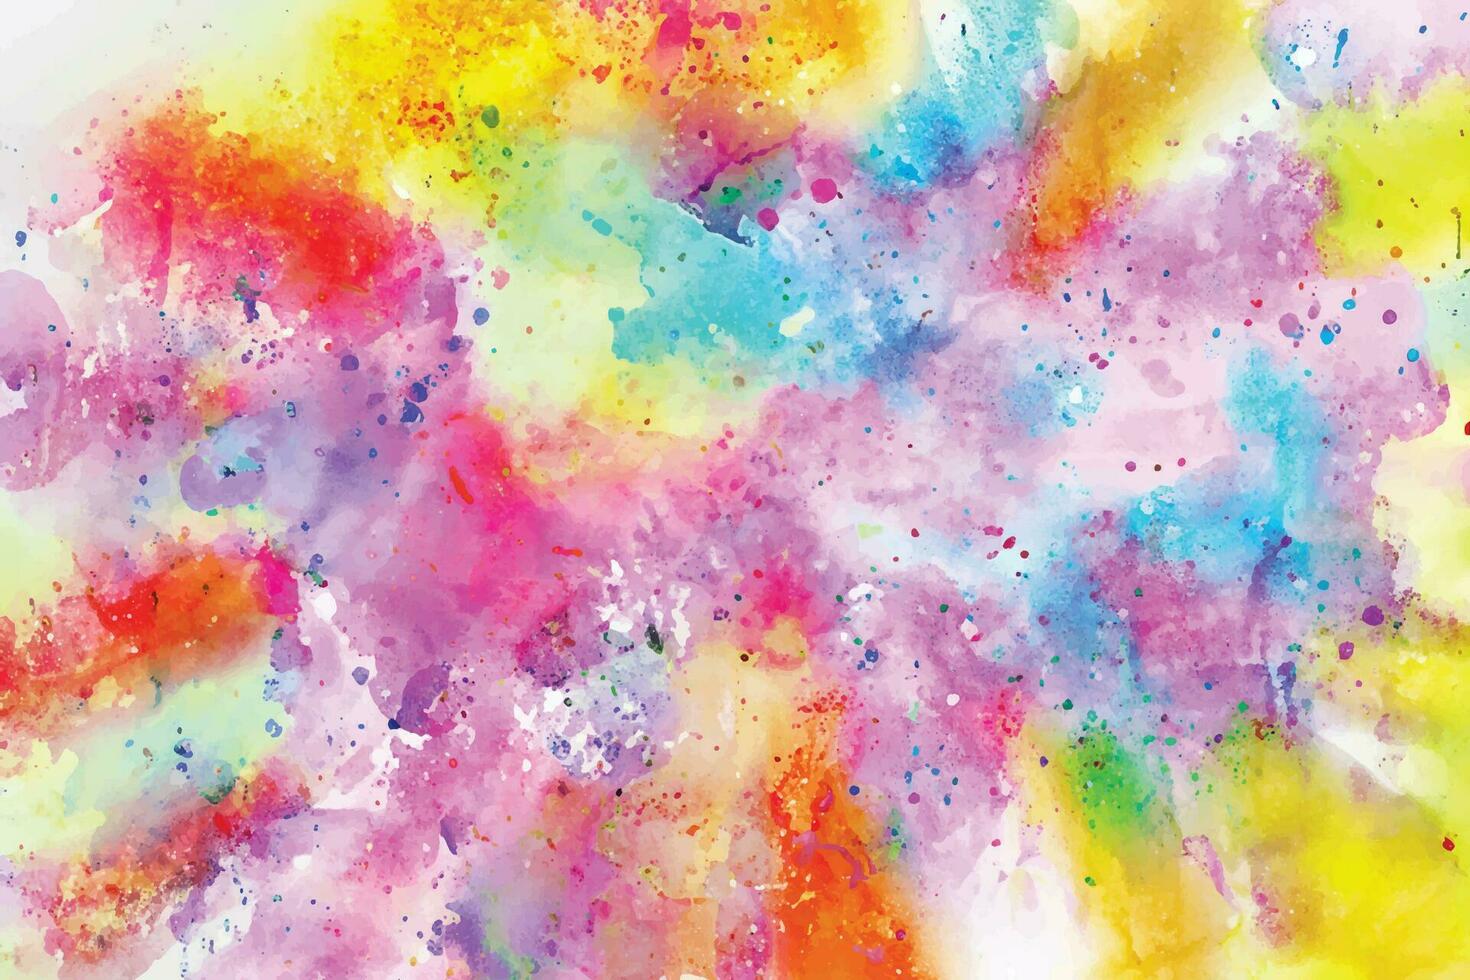 abstract achtergrond met een kleurrijk waterverf geklater ontwerp vector